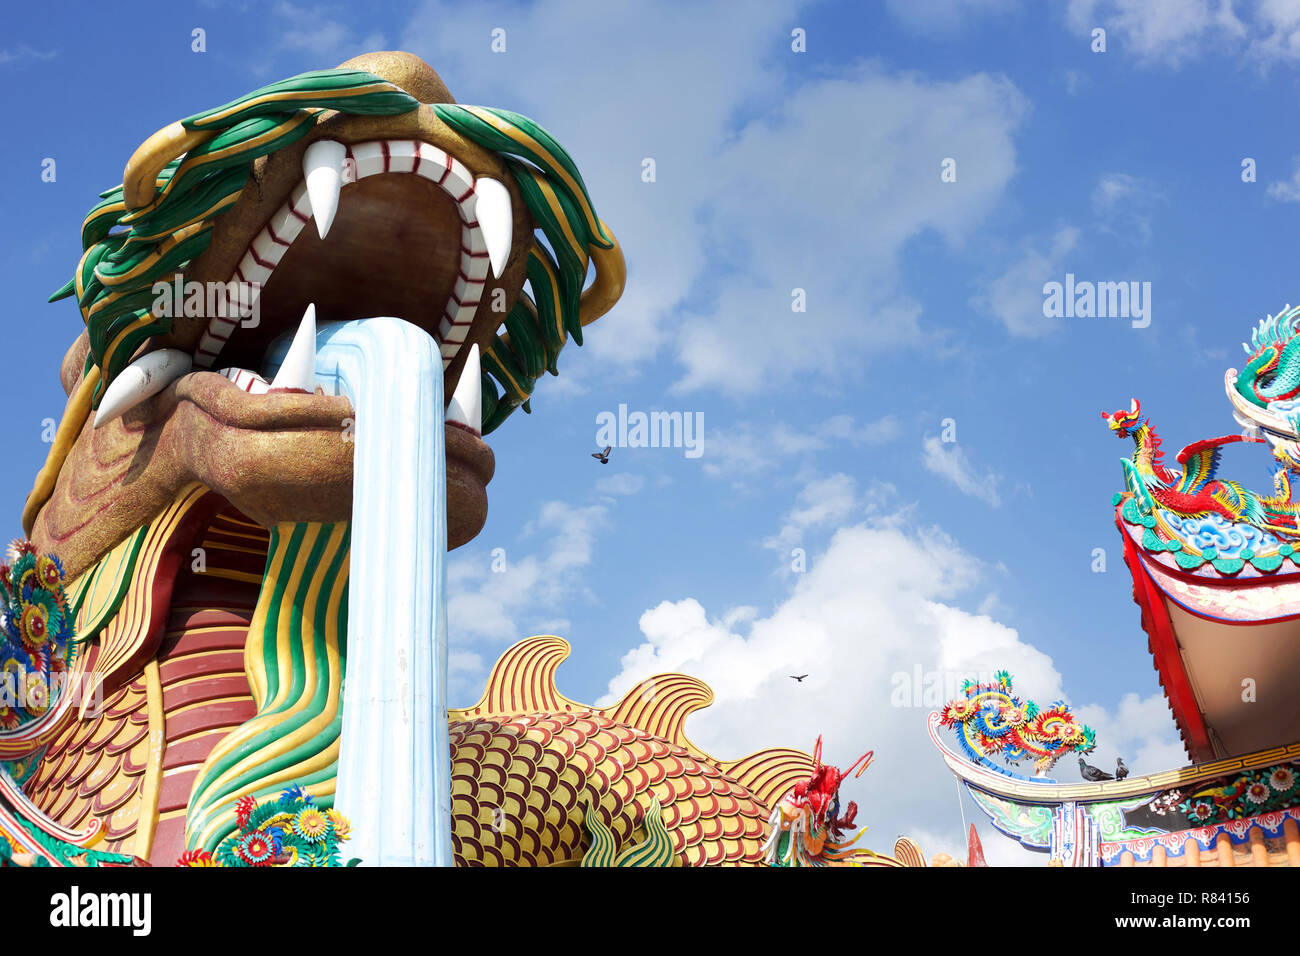 Enorme estatua de dragón en el Parque Paraíso del Dragón, un punto de referencia de un templo tailandés-chino. Suphan Buri, Tailandia Foto de stock